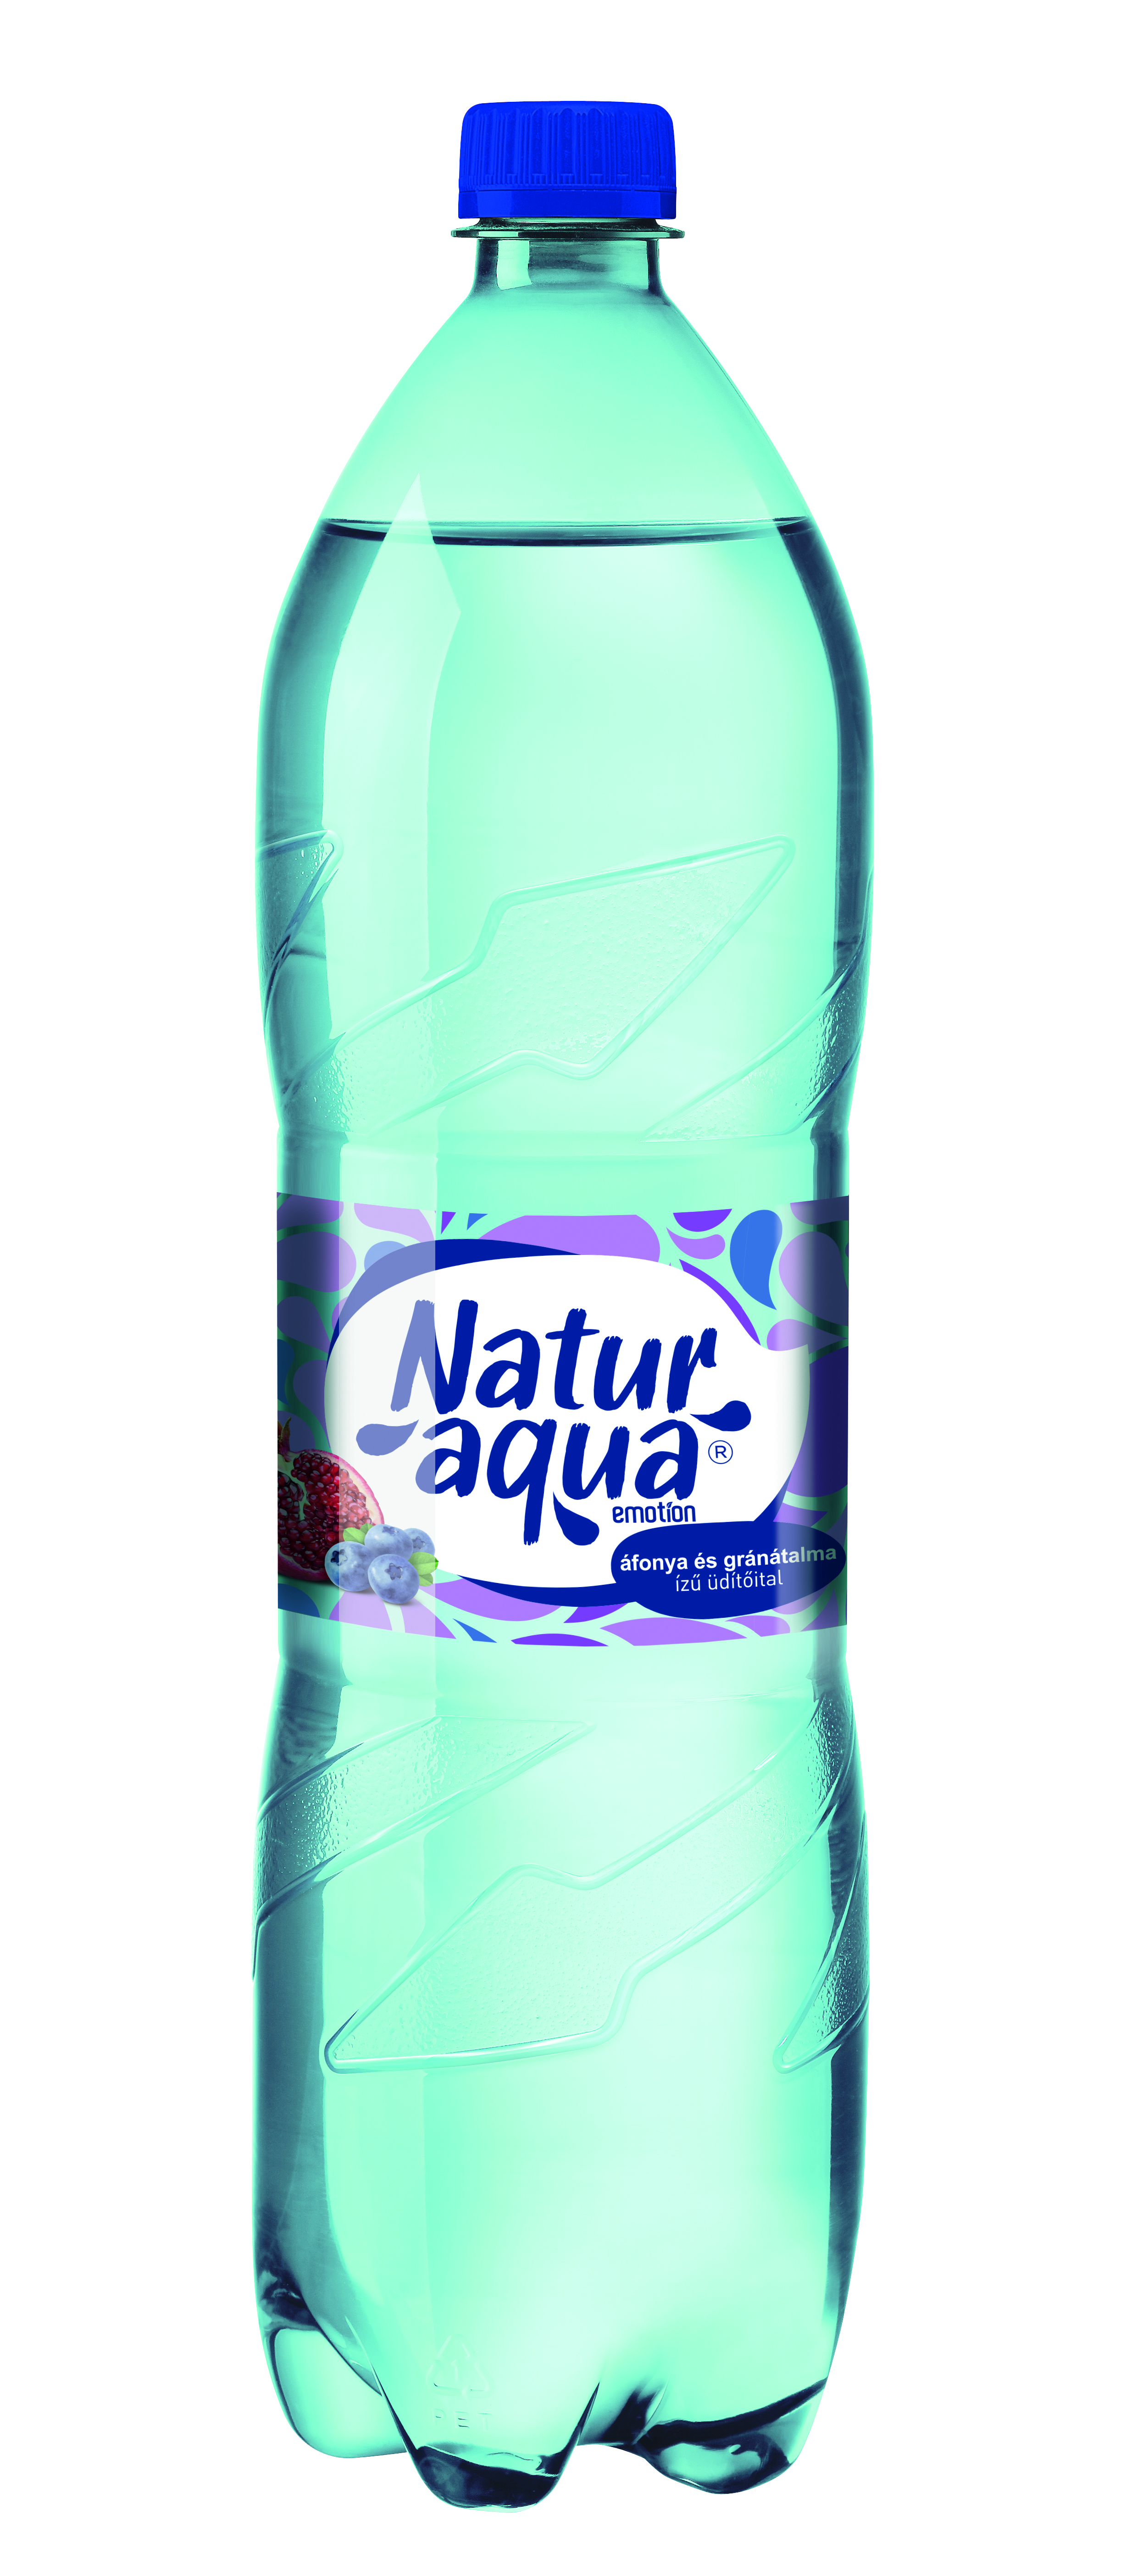 Naturaqua Emotion áfonya-gránátalma ízesített ásványvíz 1.5L PET